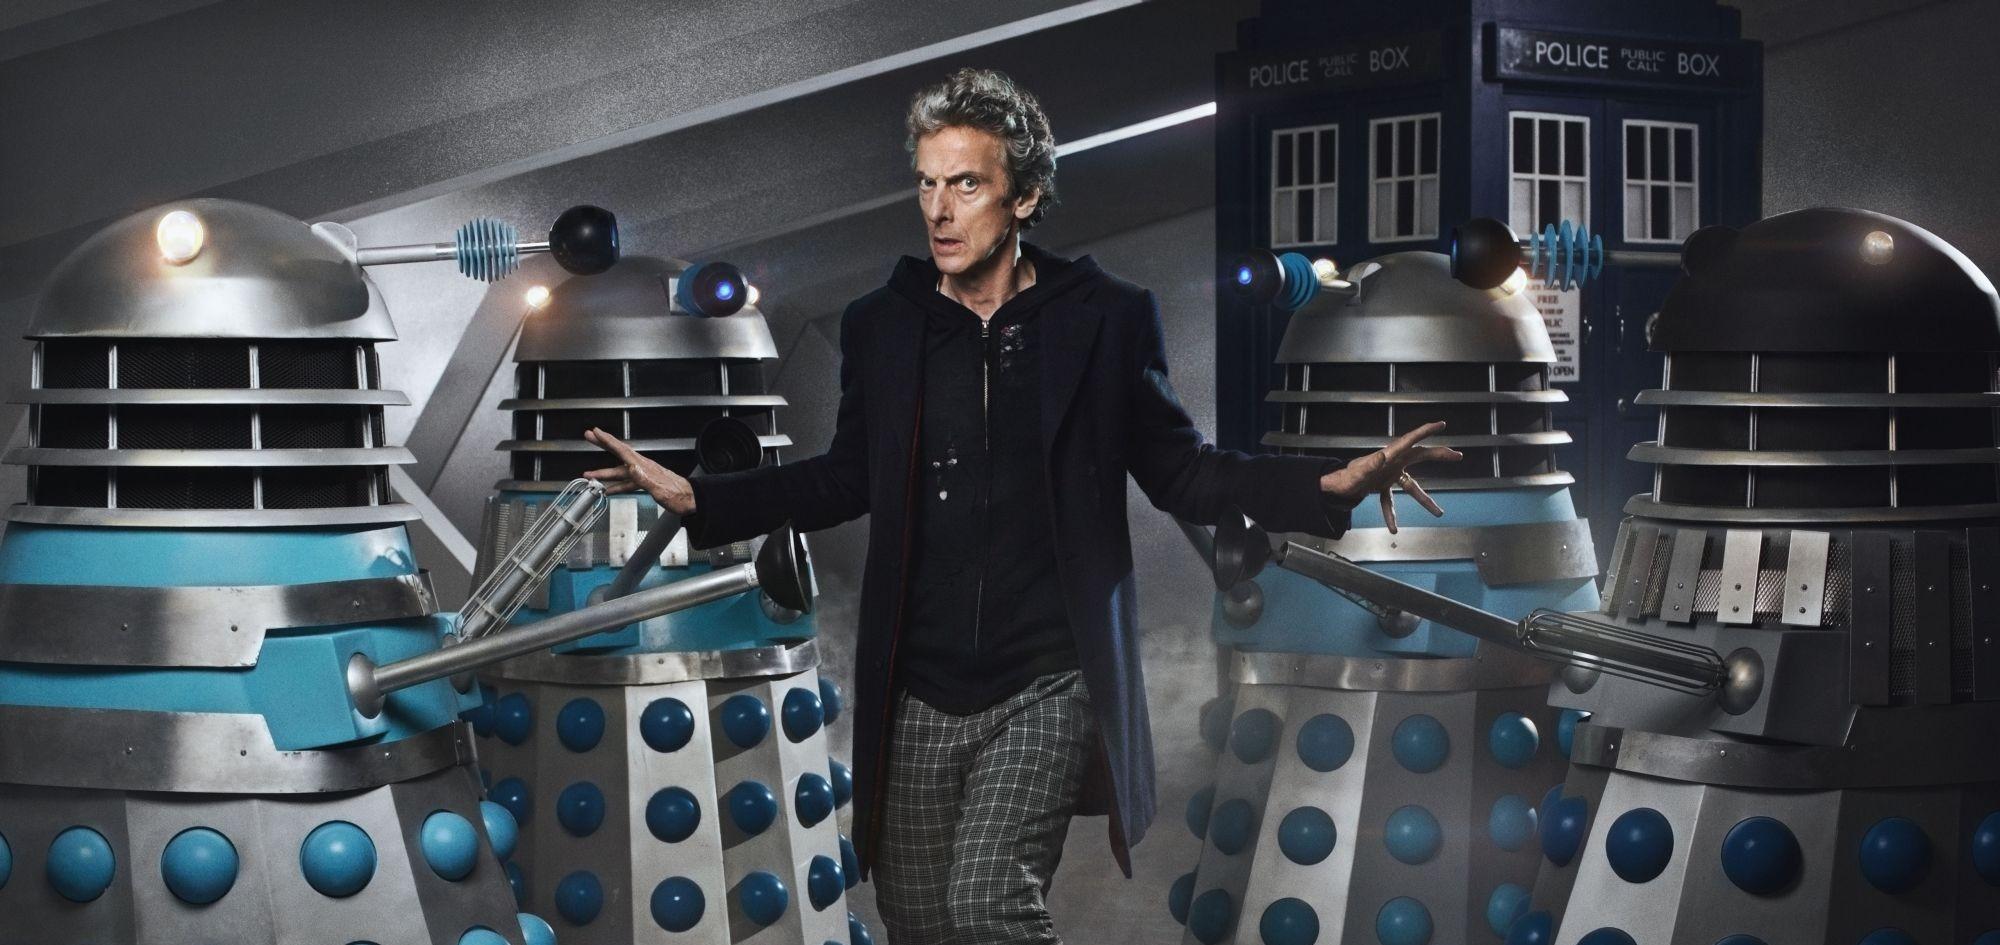 Daleks dominam as imagens do próximo episódio de Doctor Who